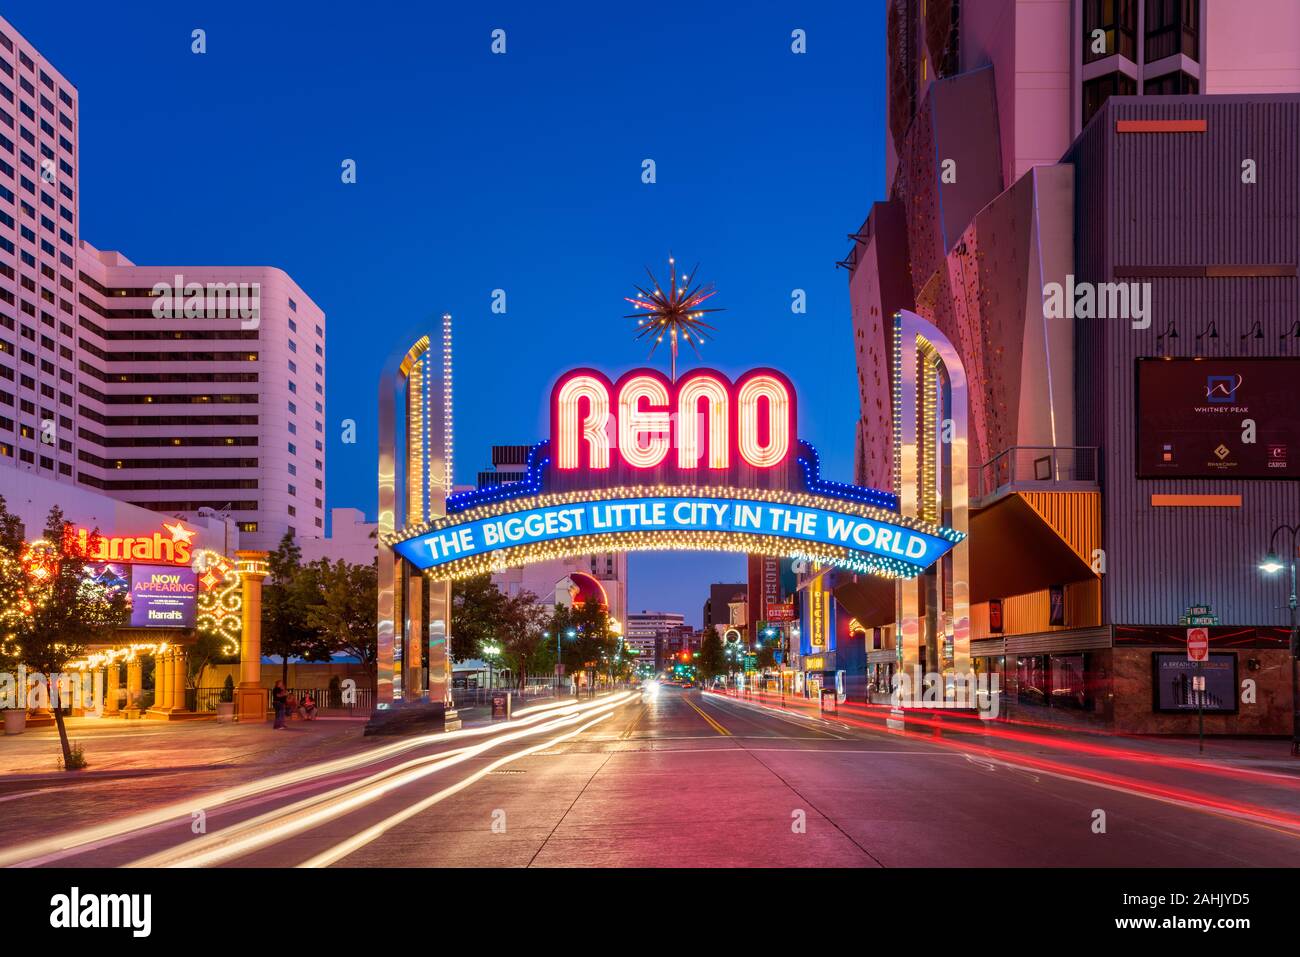 Reno Arch panneau de bienvenue à Reno, Nevada, USA. Reno est la deuxième plus grande ville du Nevada et célèbre pour ses casinos et divertissements. Banque D'Images